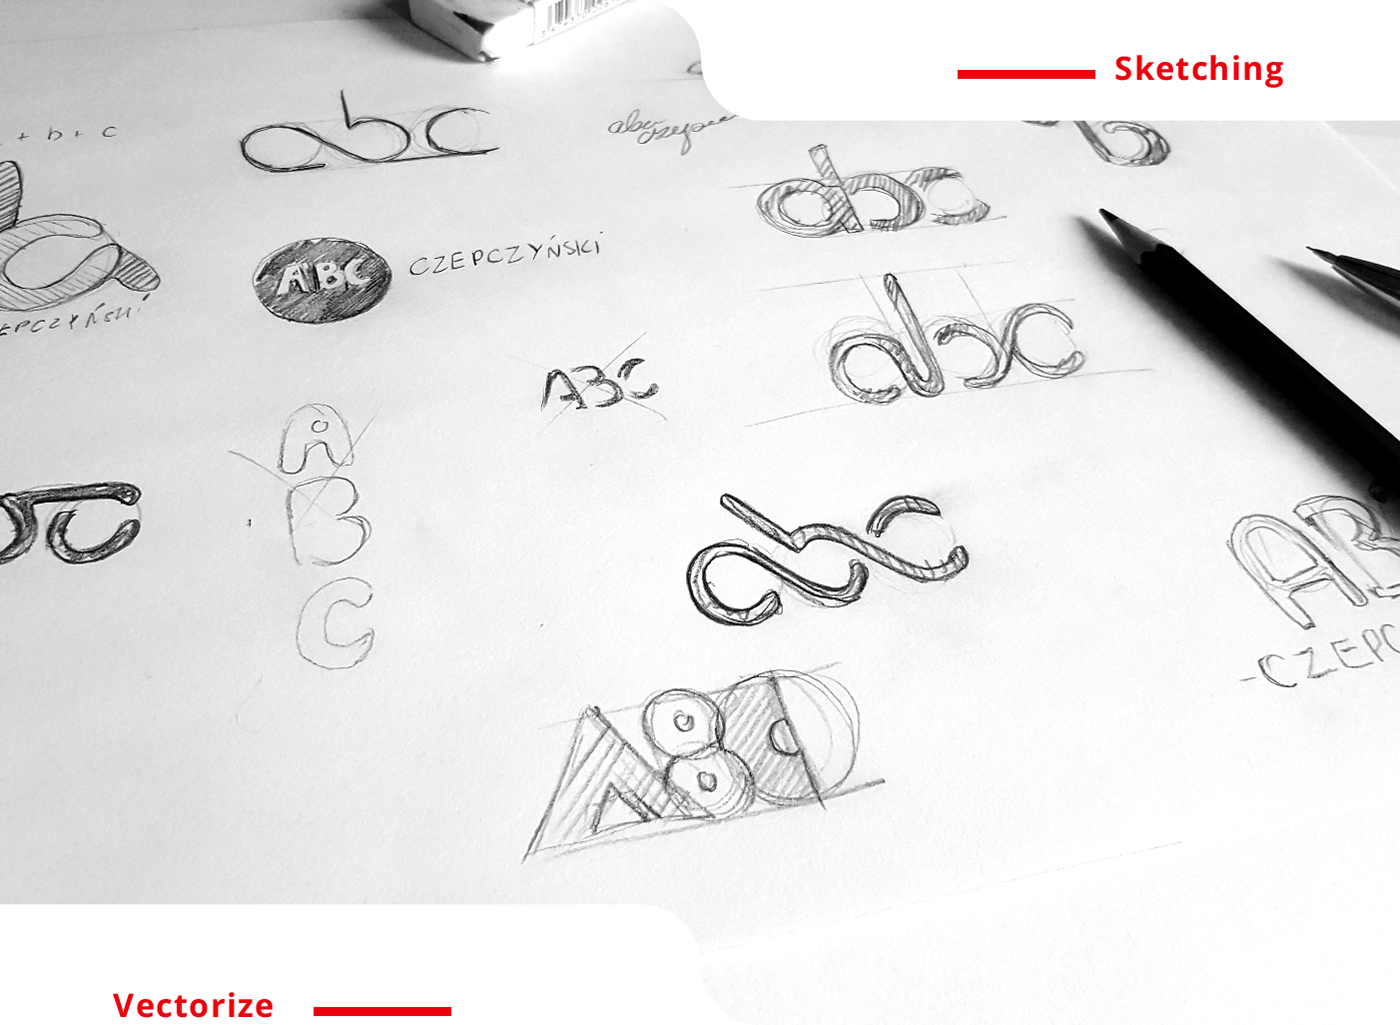 branding  Website animation  rebranding logo Logotype brand